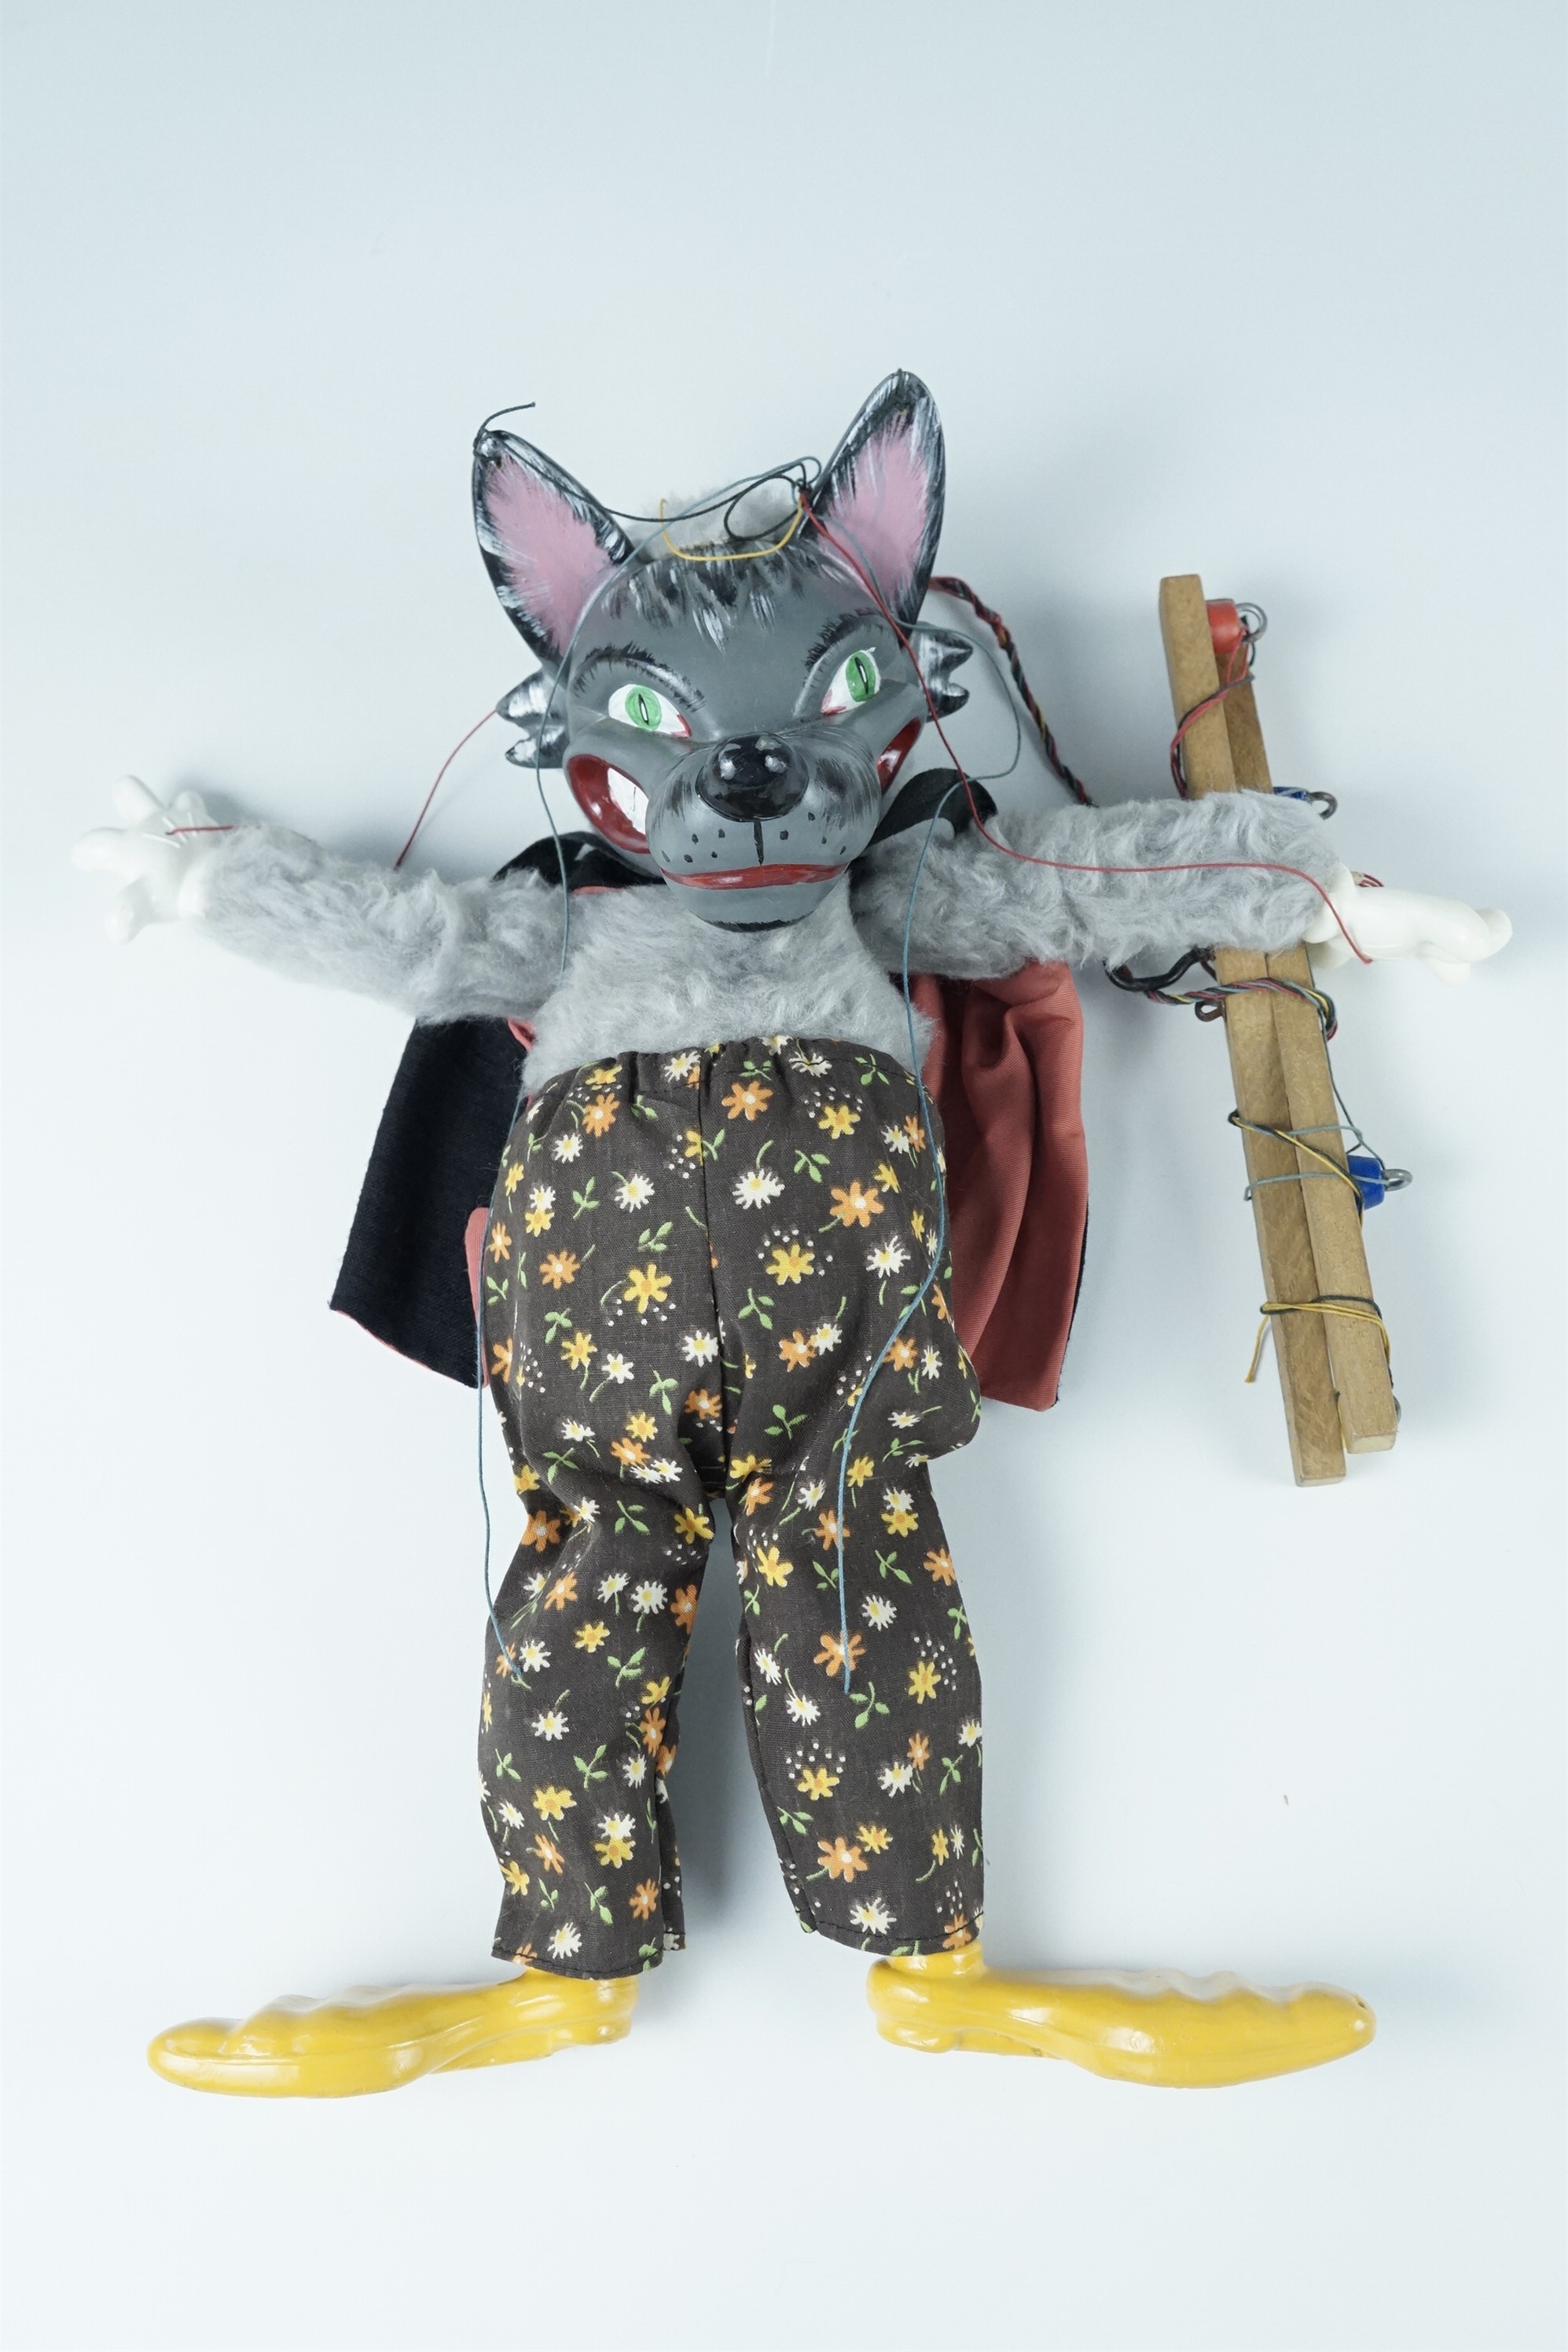 A 1960s Pelham Puppet SL21 "Wolf" in original box, puppet 35 cm